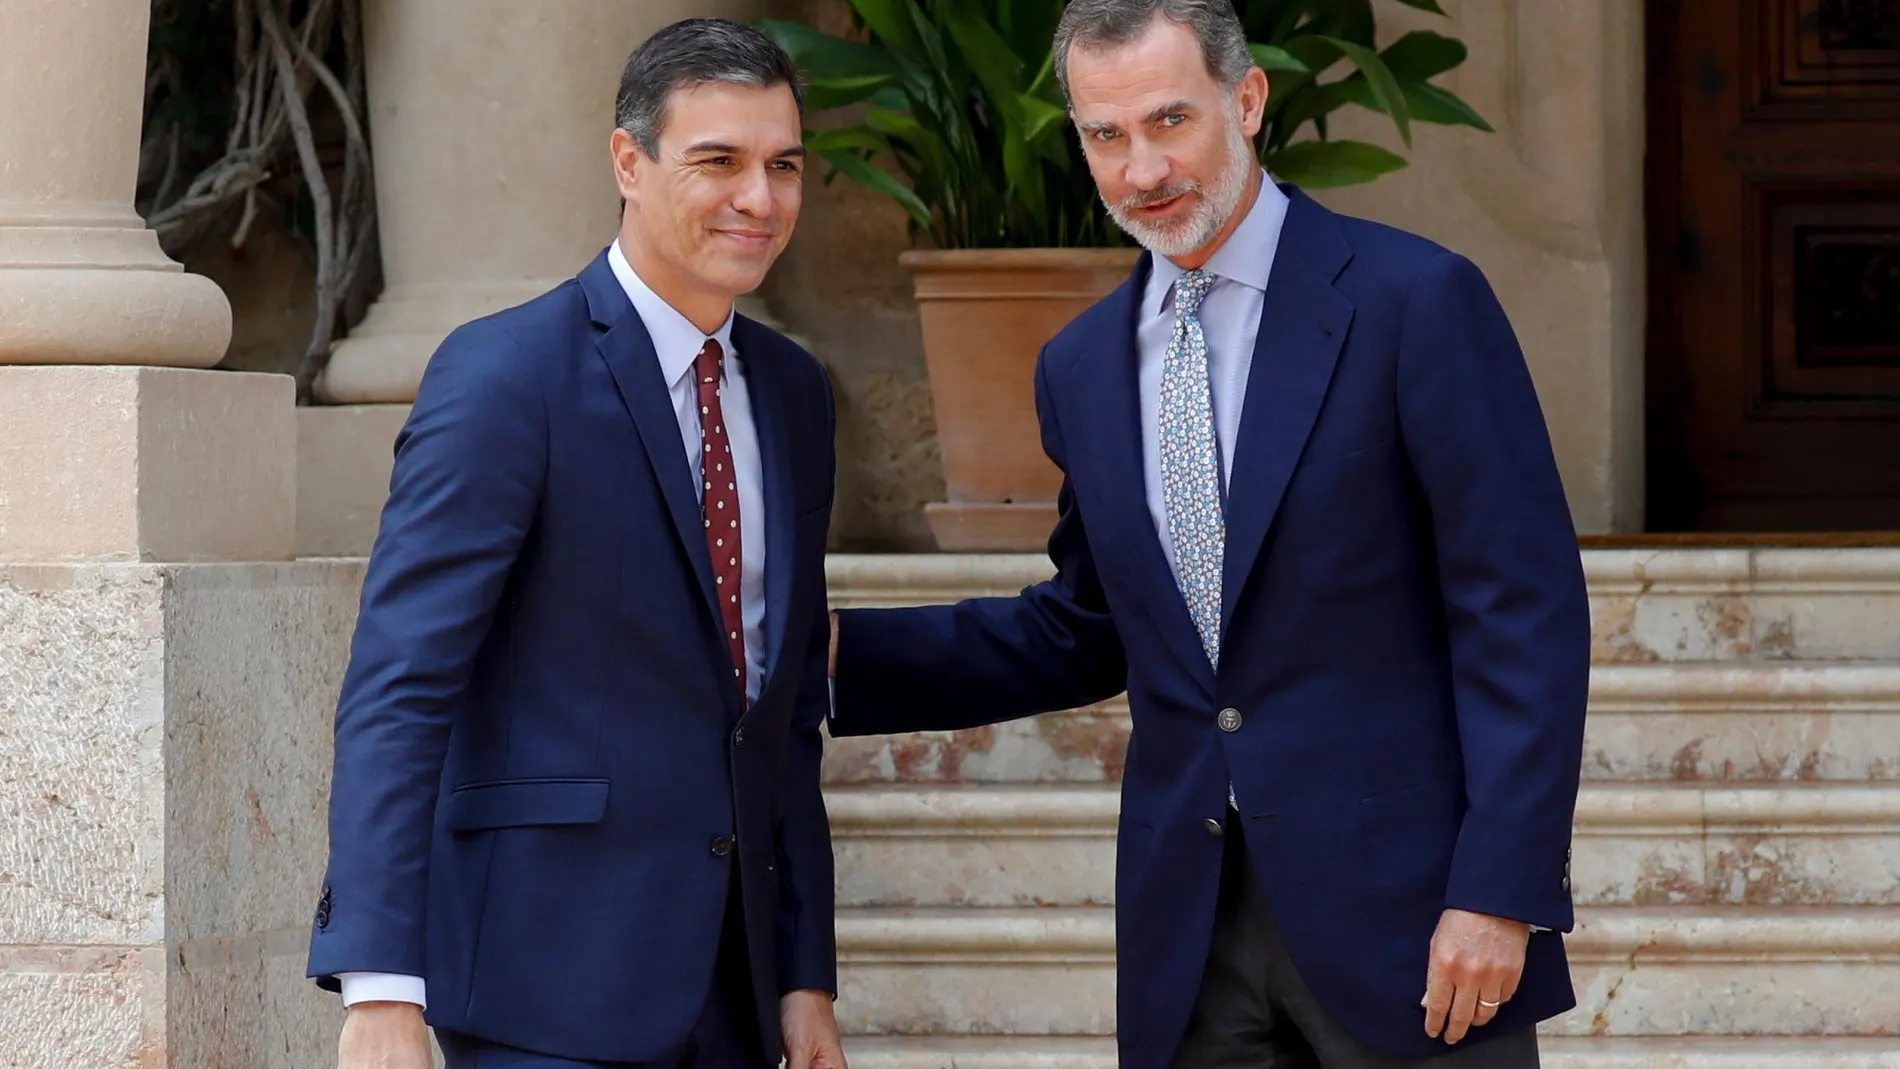 El Rey Felipe VI y el presidente del Gobierno en funciones, Pedro Sánchez, en la entrada del Palacio de Marivent donde han celebrado el tradicional despacho de verano/Efe